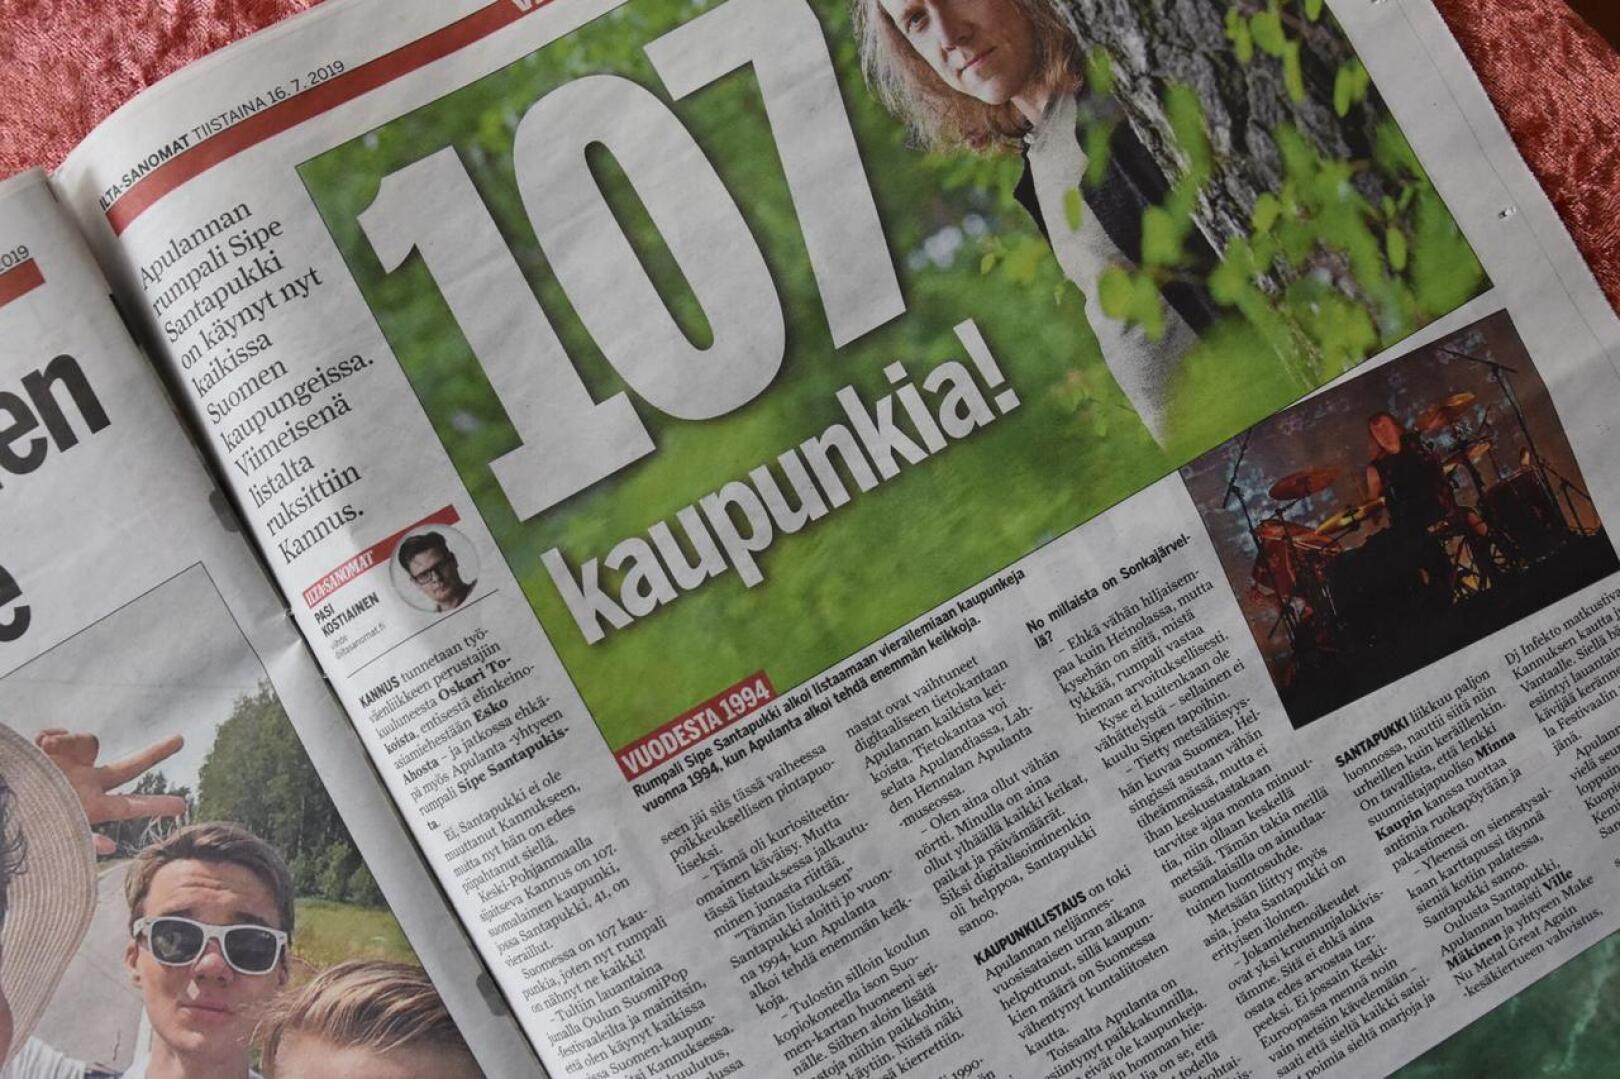 Kannus viimeisenä. Suomessa on 107 kaupunkia, joten nyt rumpali Sipe Santapukki on nähnyt ne kaikki! Viime lauantaina hän vietti 10 minuuttia Kannuksen rautatieasemalla.